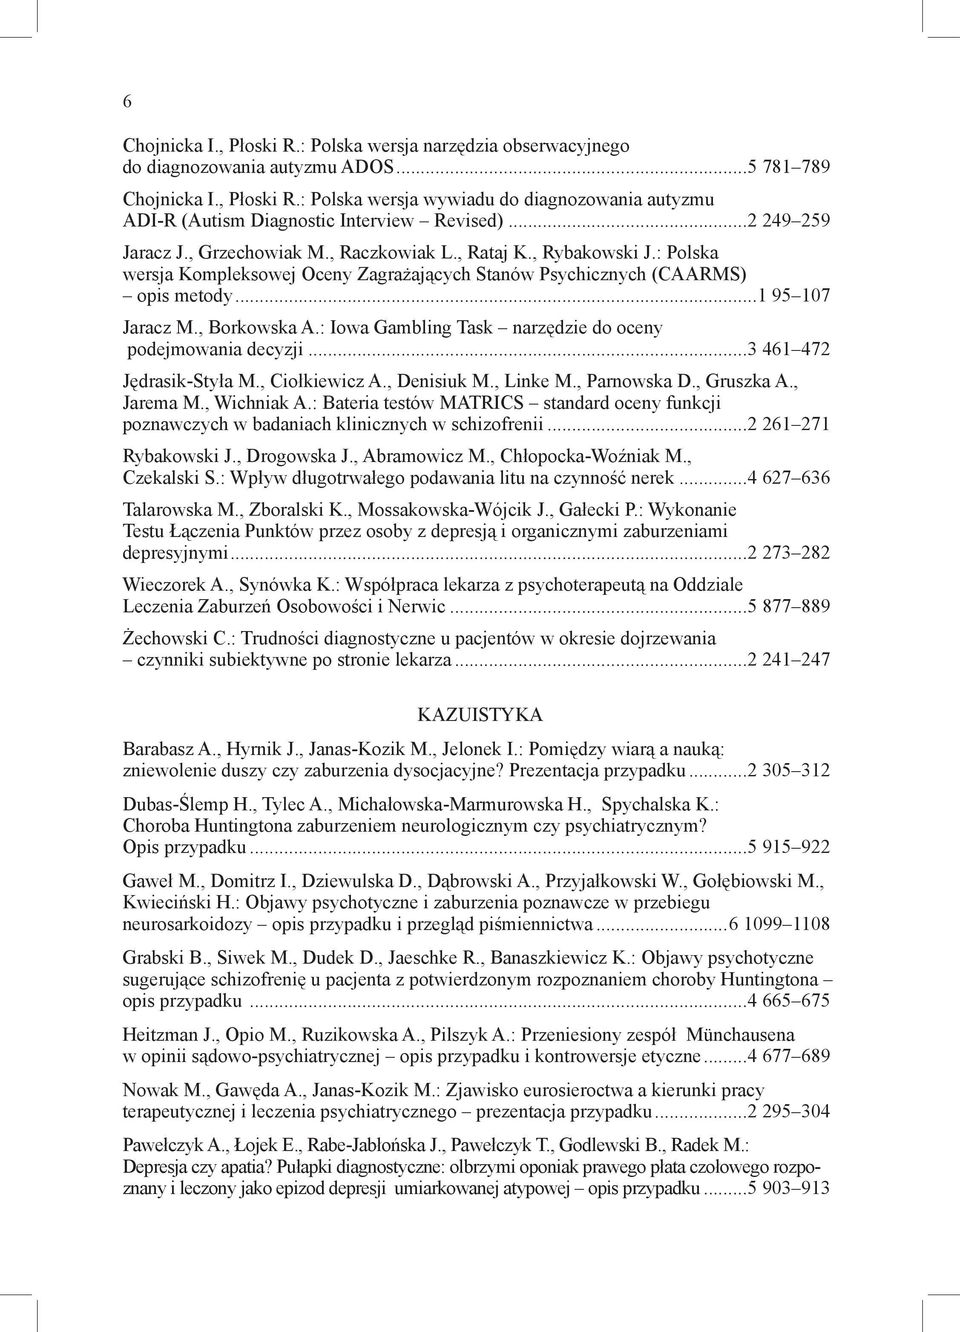 , Borkowska A.: Iowa Gambling Task narzędzie do oceny podejmowania decyzji...3 461 472 Jędrasik-Styła M., Ciołkiewicz A., Denisiuk M., Linke M., Parnowska D., Gruszka A., Jarema M., Wichniak A.